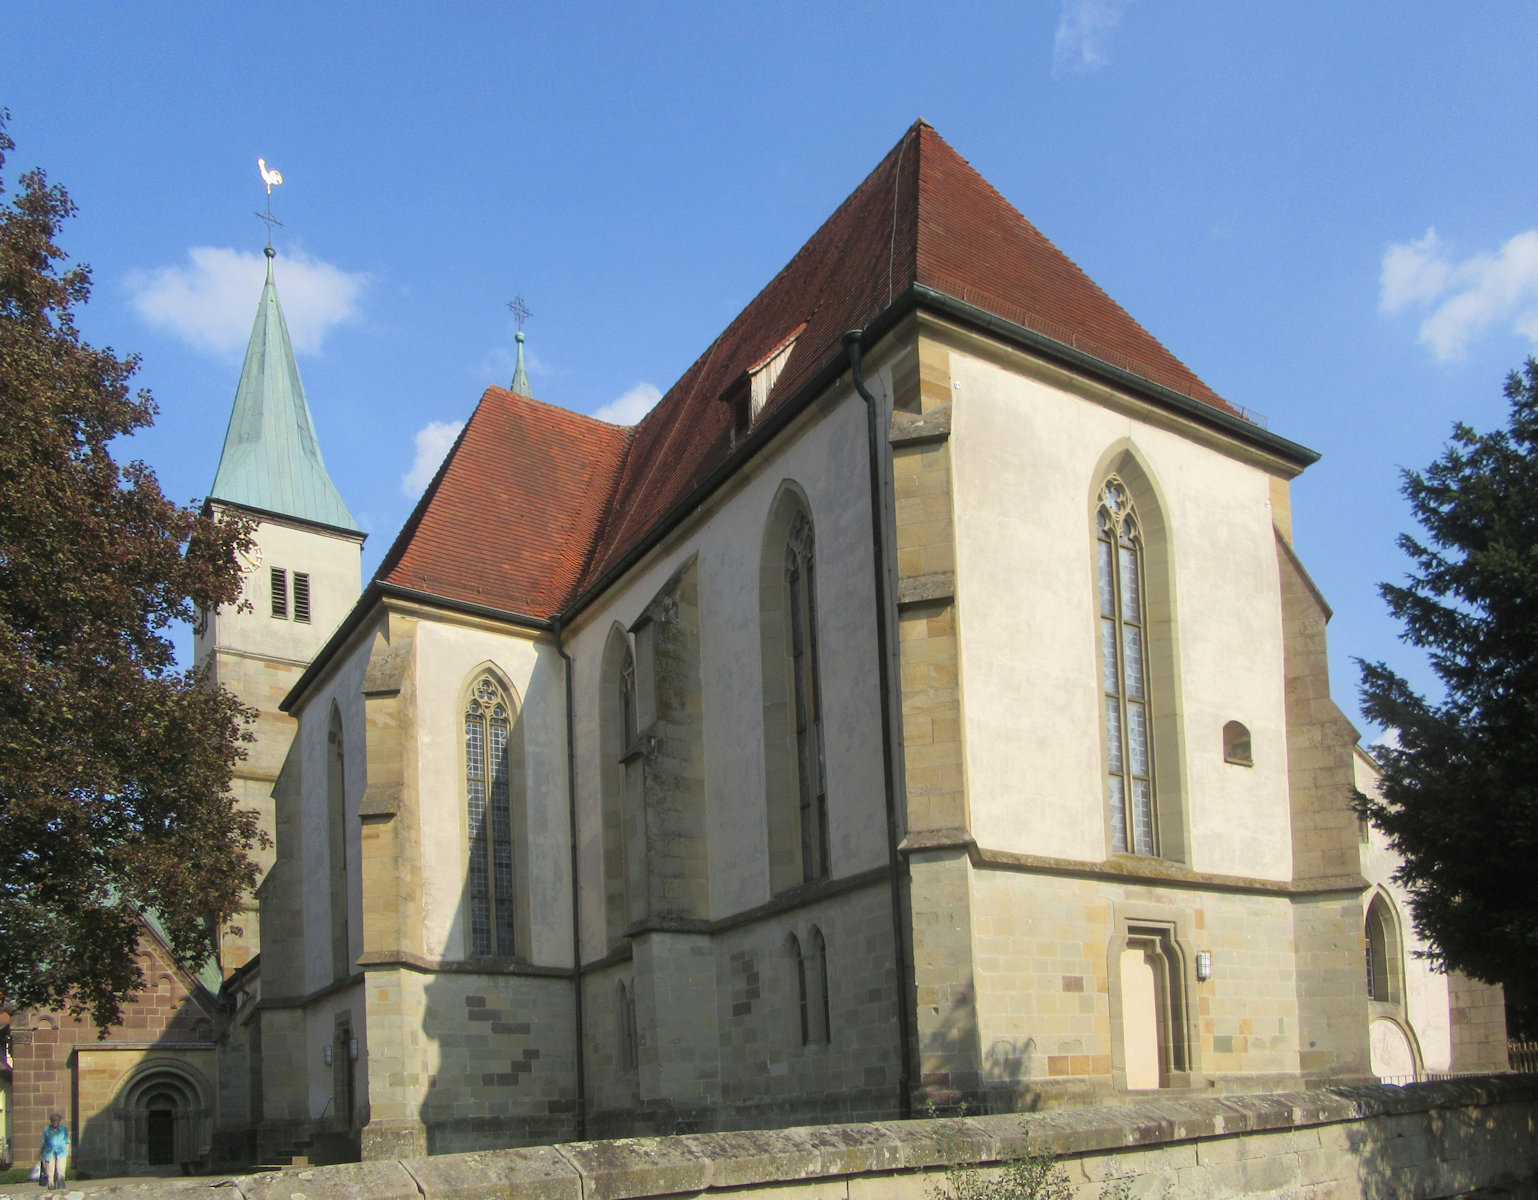 ehemalige Kloster- und heutige Stadtkirche in Murrhardt mit angebauter Walterichskapelle (links)